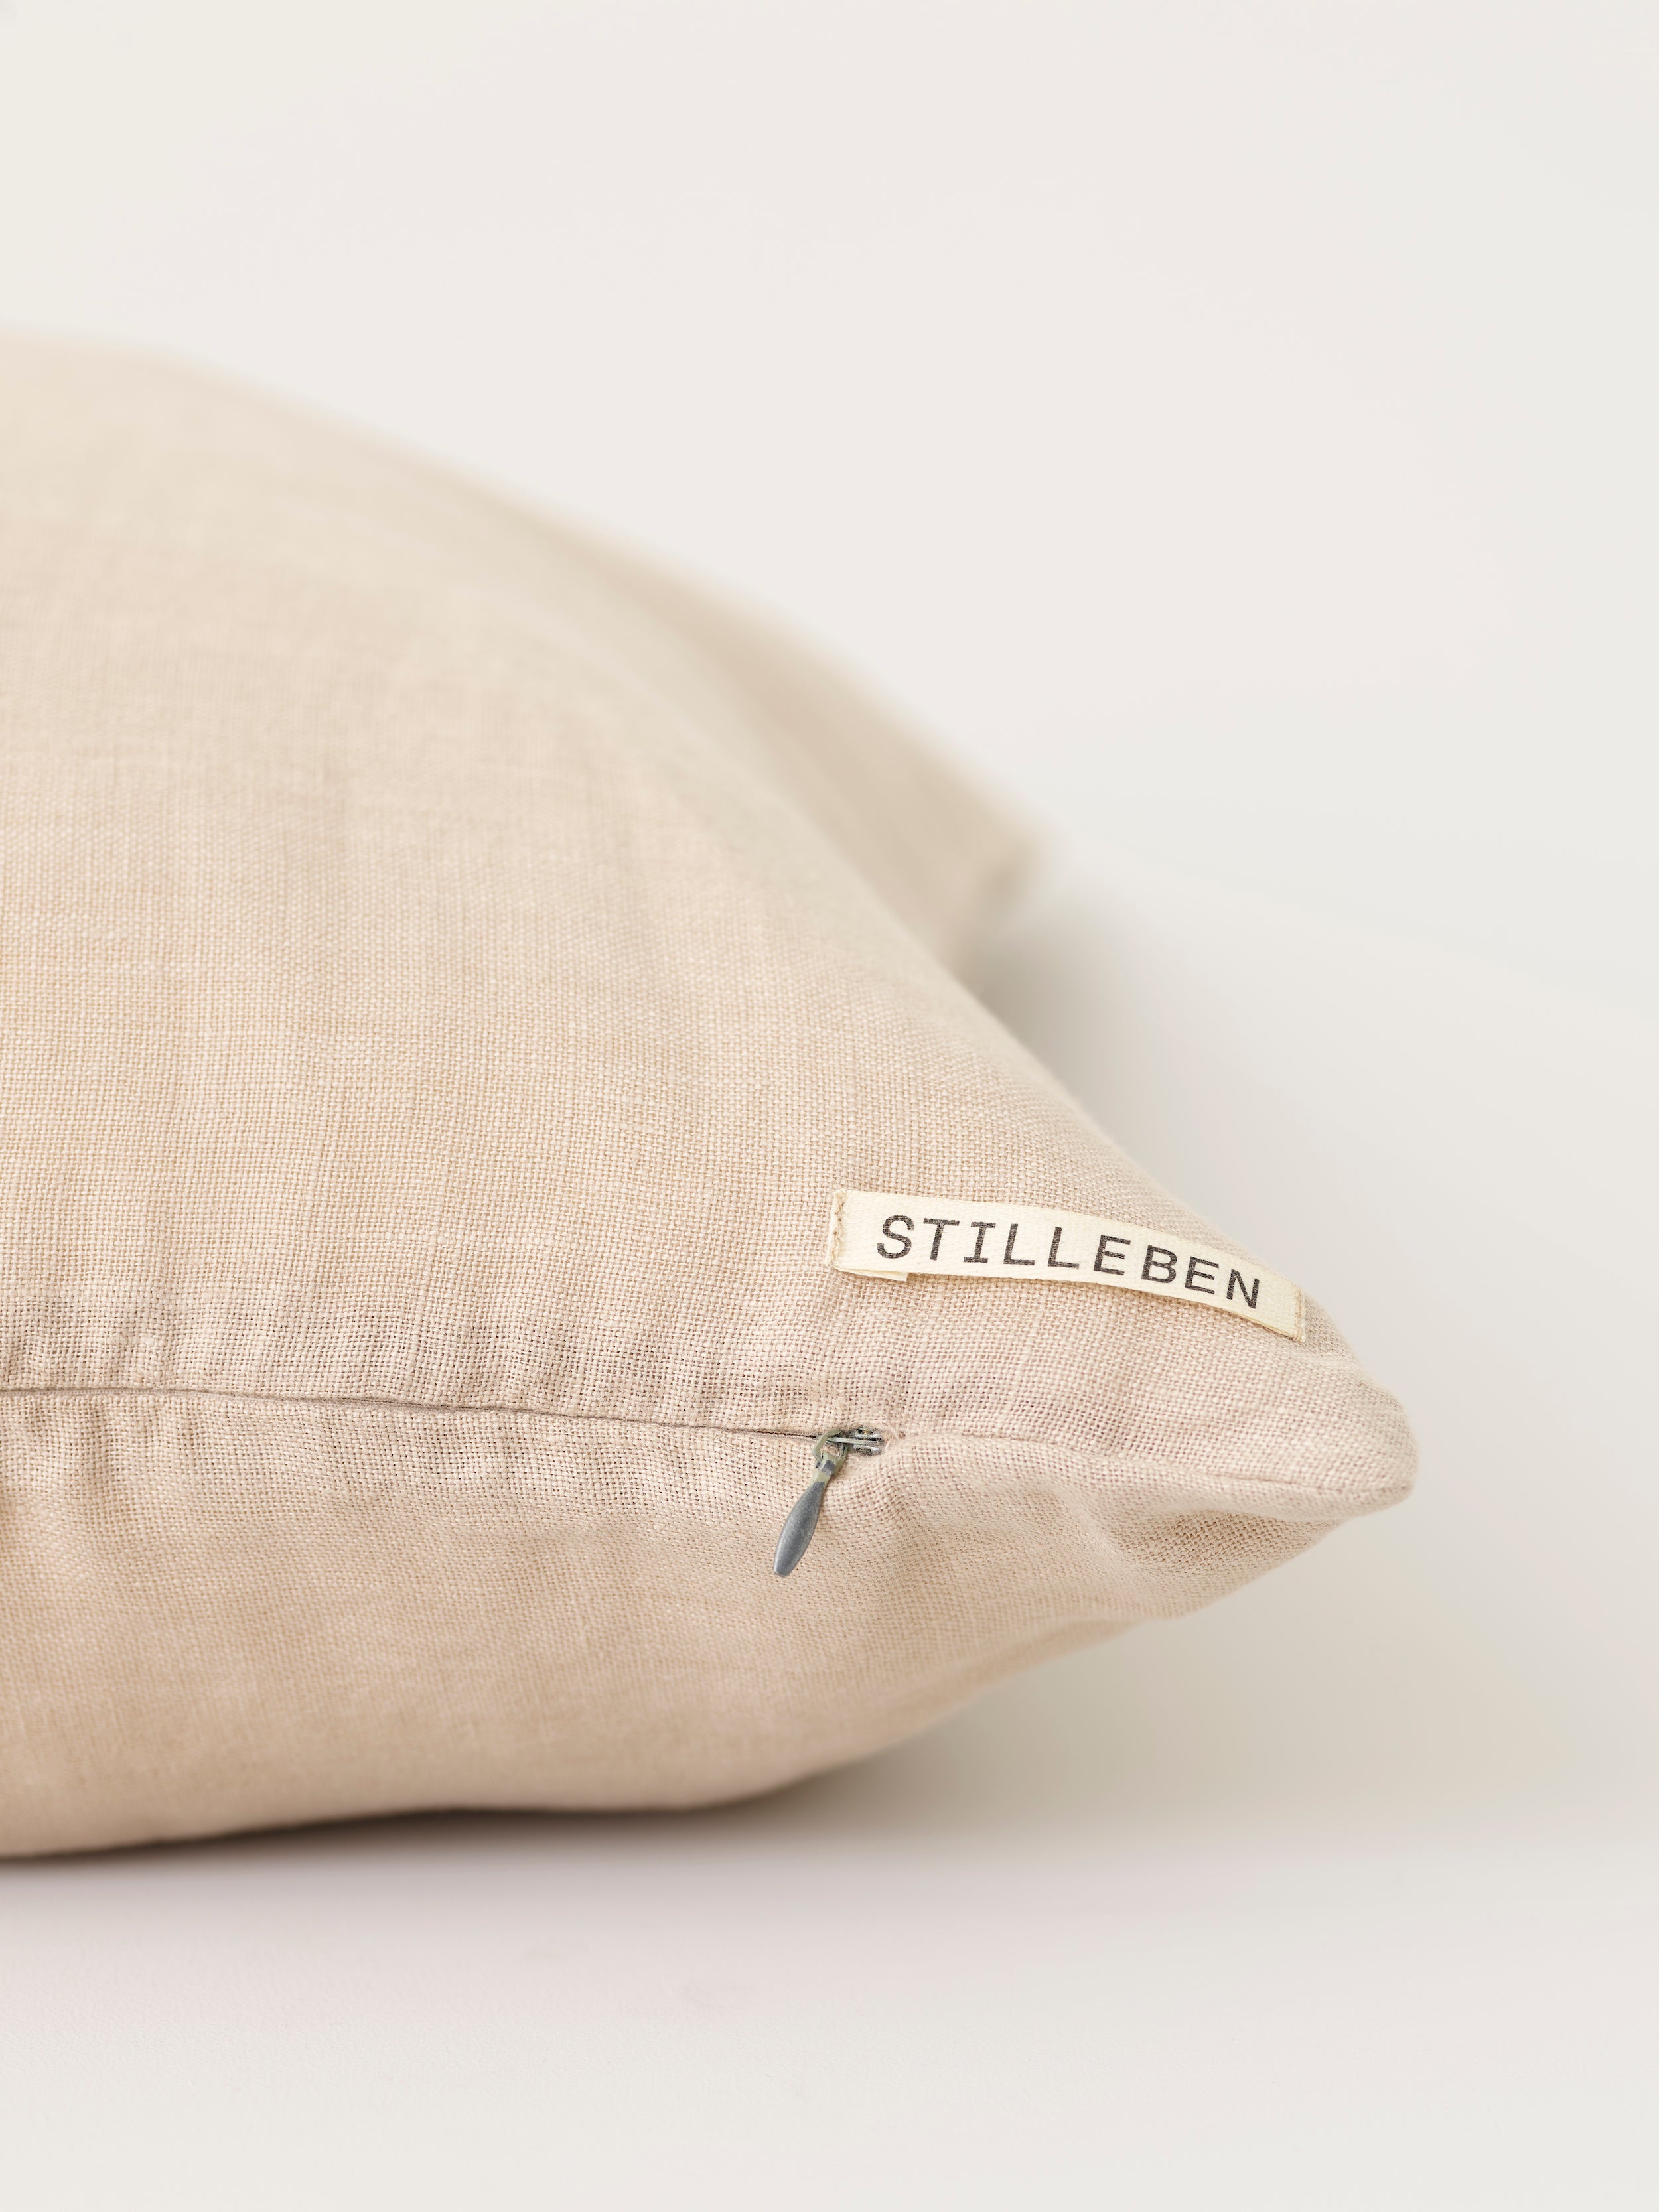 Stilleben cushion cover almond